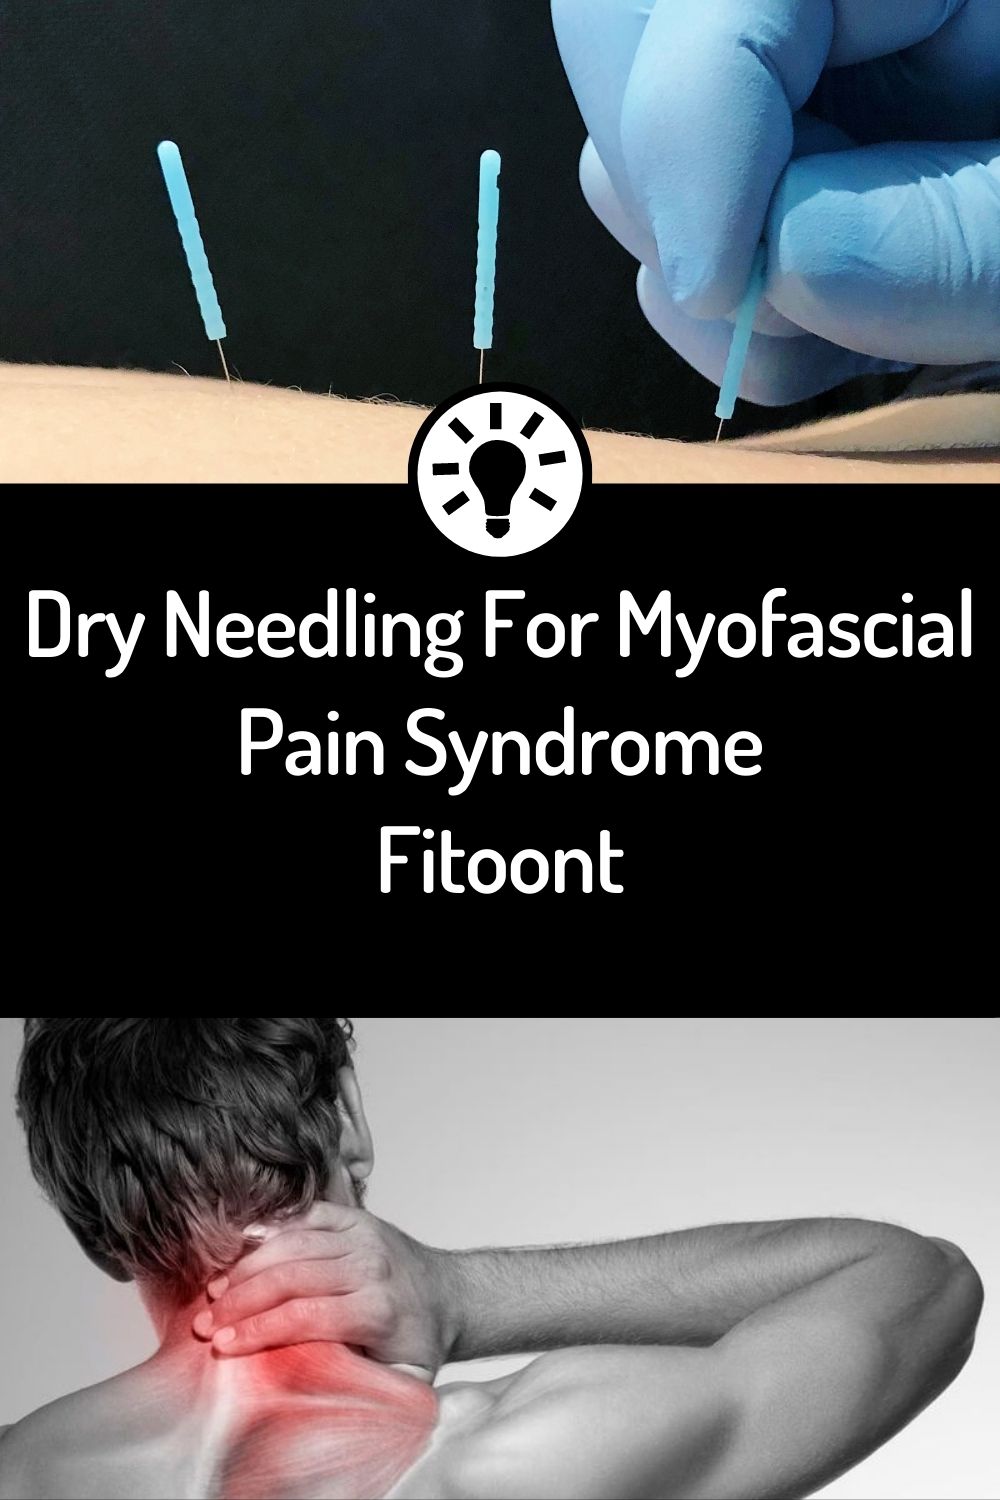 dry needling dry needling, dry needles dry needles, myofascial pain syndrome myofascial pain syndrome, myofascial trigger points myofascial trigger points, trigger points trigger points